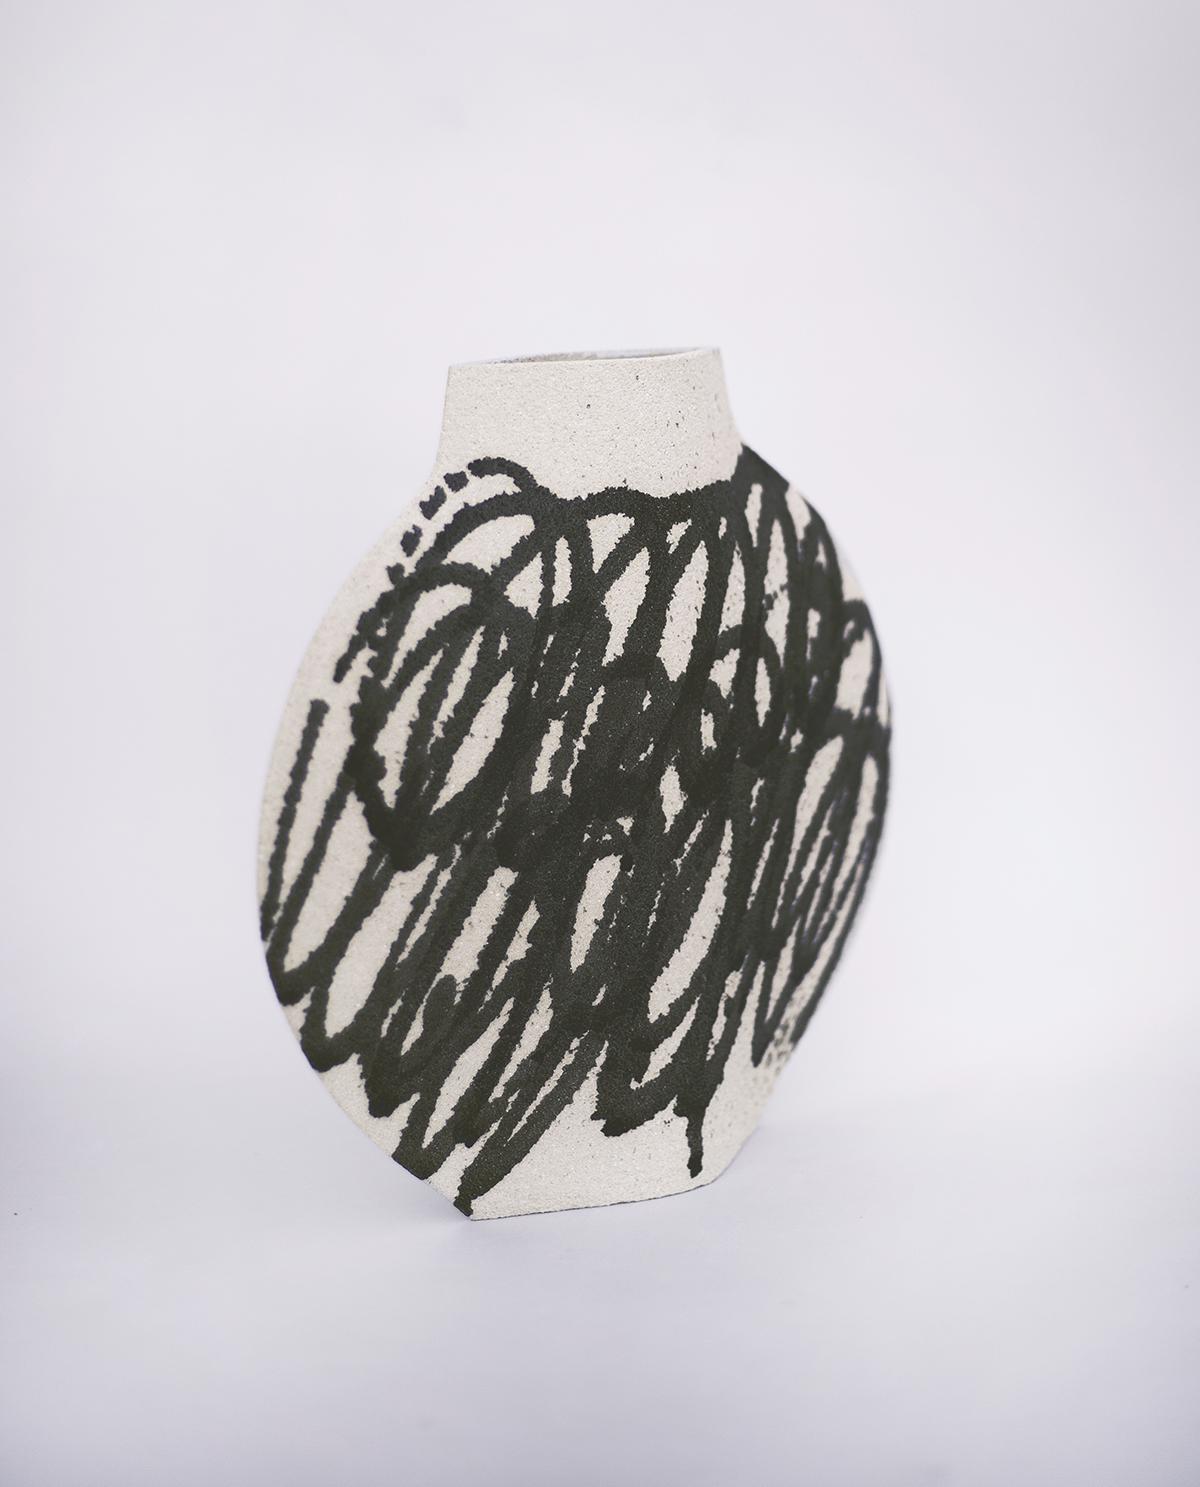 keramikvase 'Lune [M] - Kreise schwarz N°1'

Diese Vase ist Teil einer neuen Serie, die von ikonischen Bewegungen der Kunst (oder genauer gesagt der Malerei) inspiriert ist. Hier ist unser Modell LUNE [M] mit Motiven, die auf abstrakten Gemälden